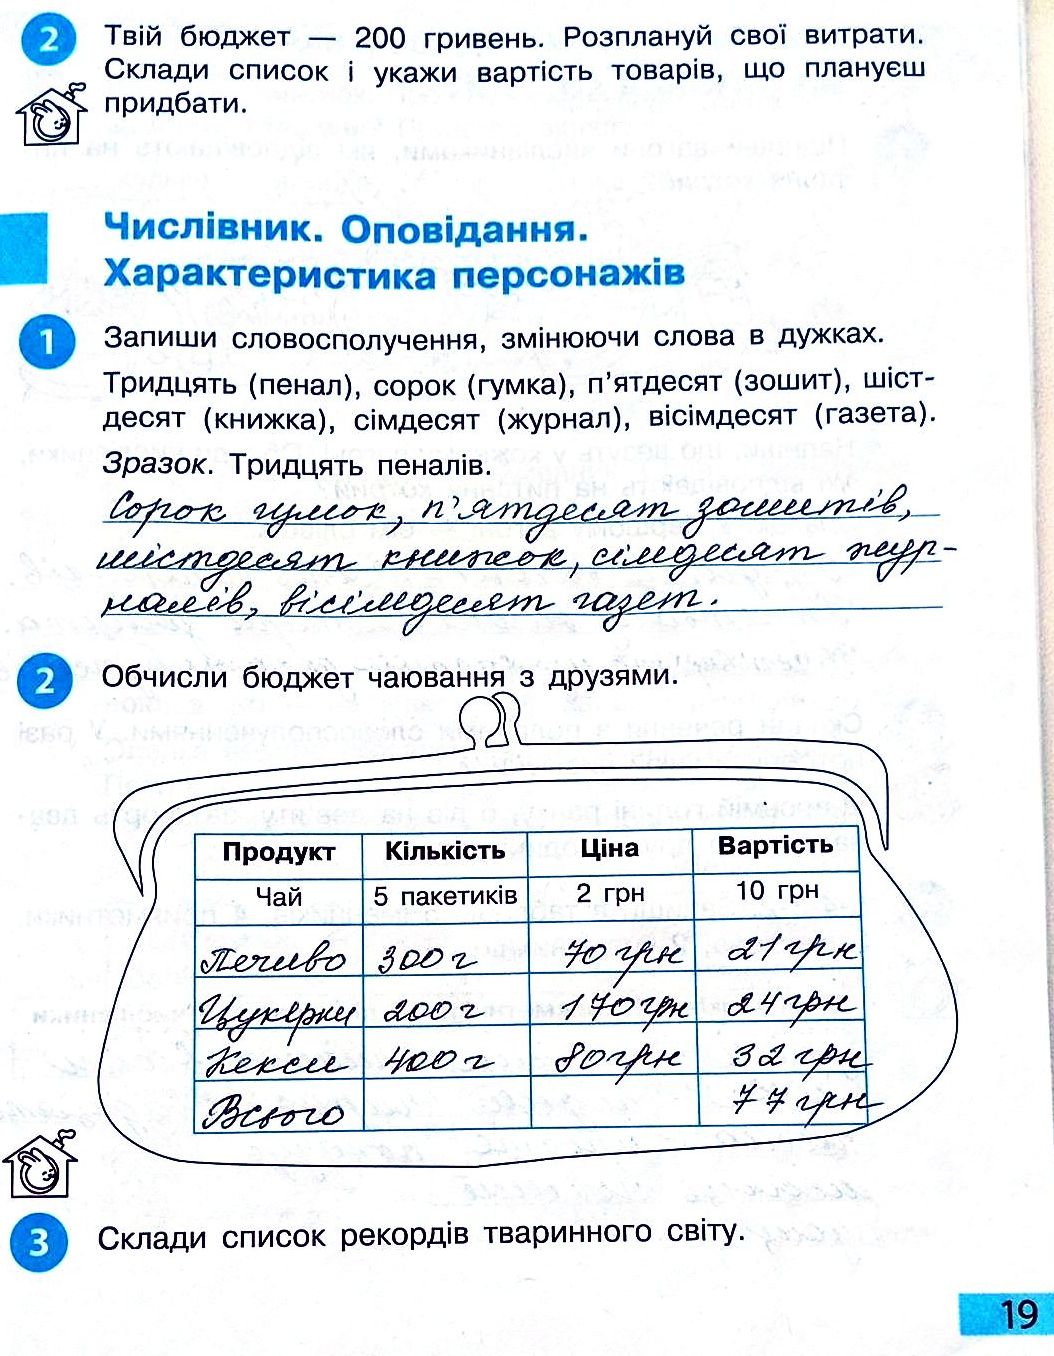 Сторінка 19 частина 2 гдз 3 клас робочий зошит українська мова Большакова